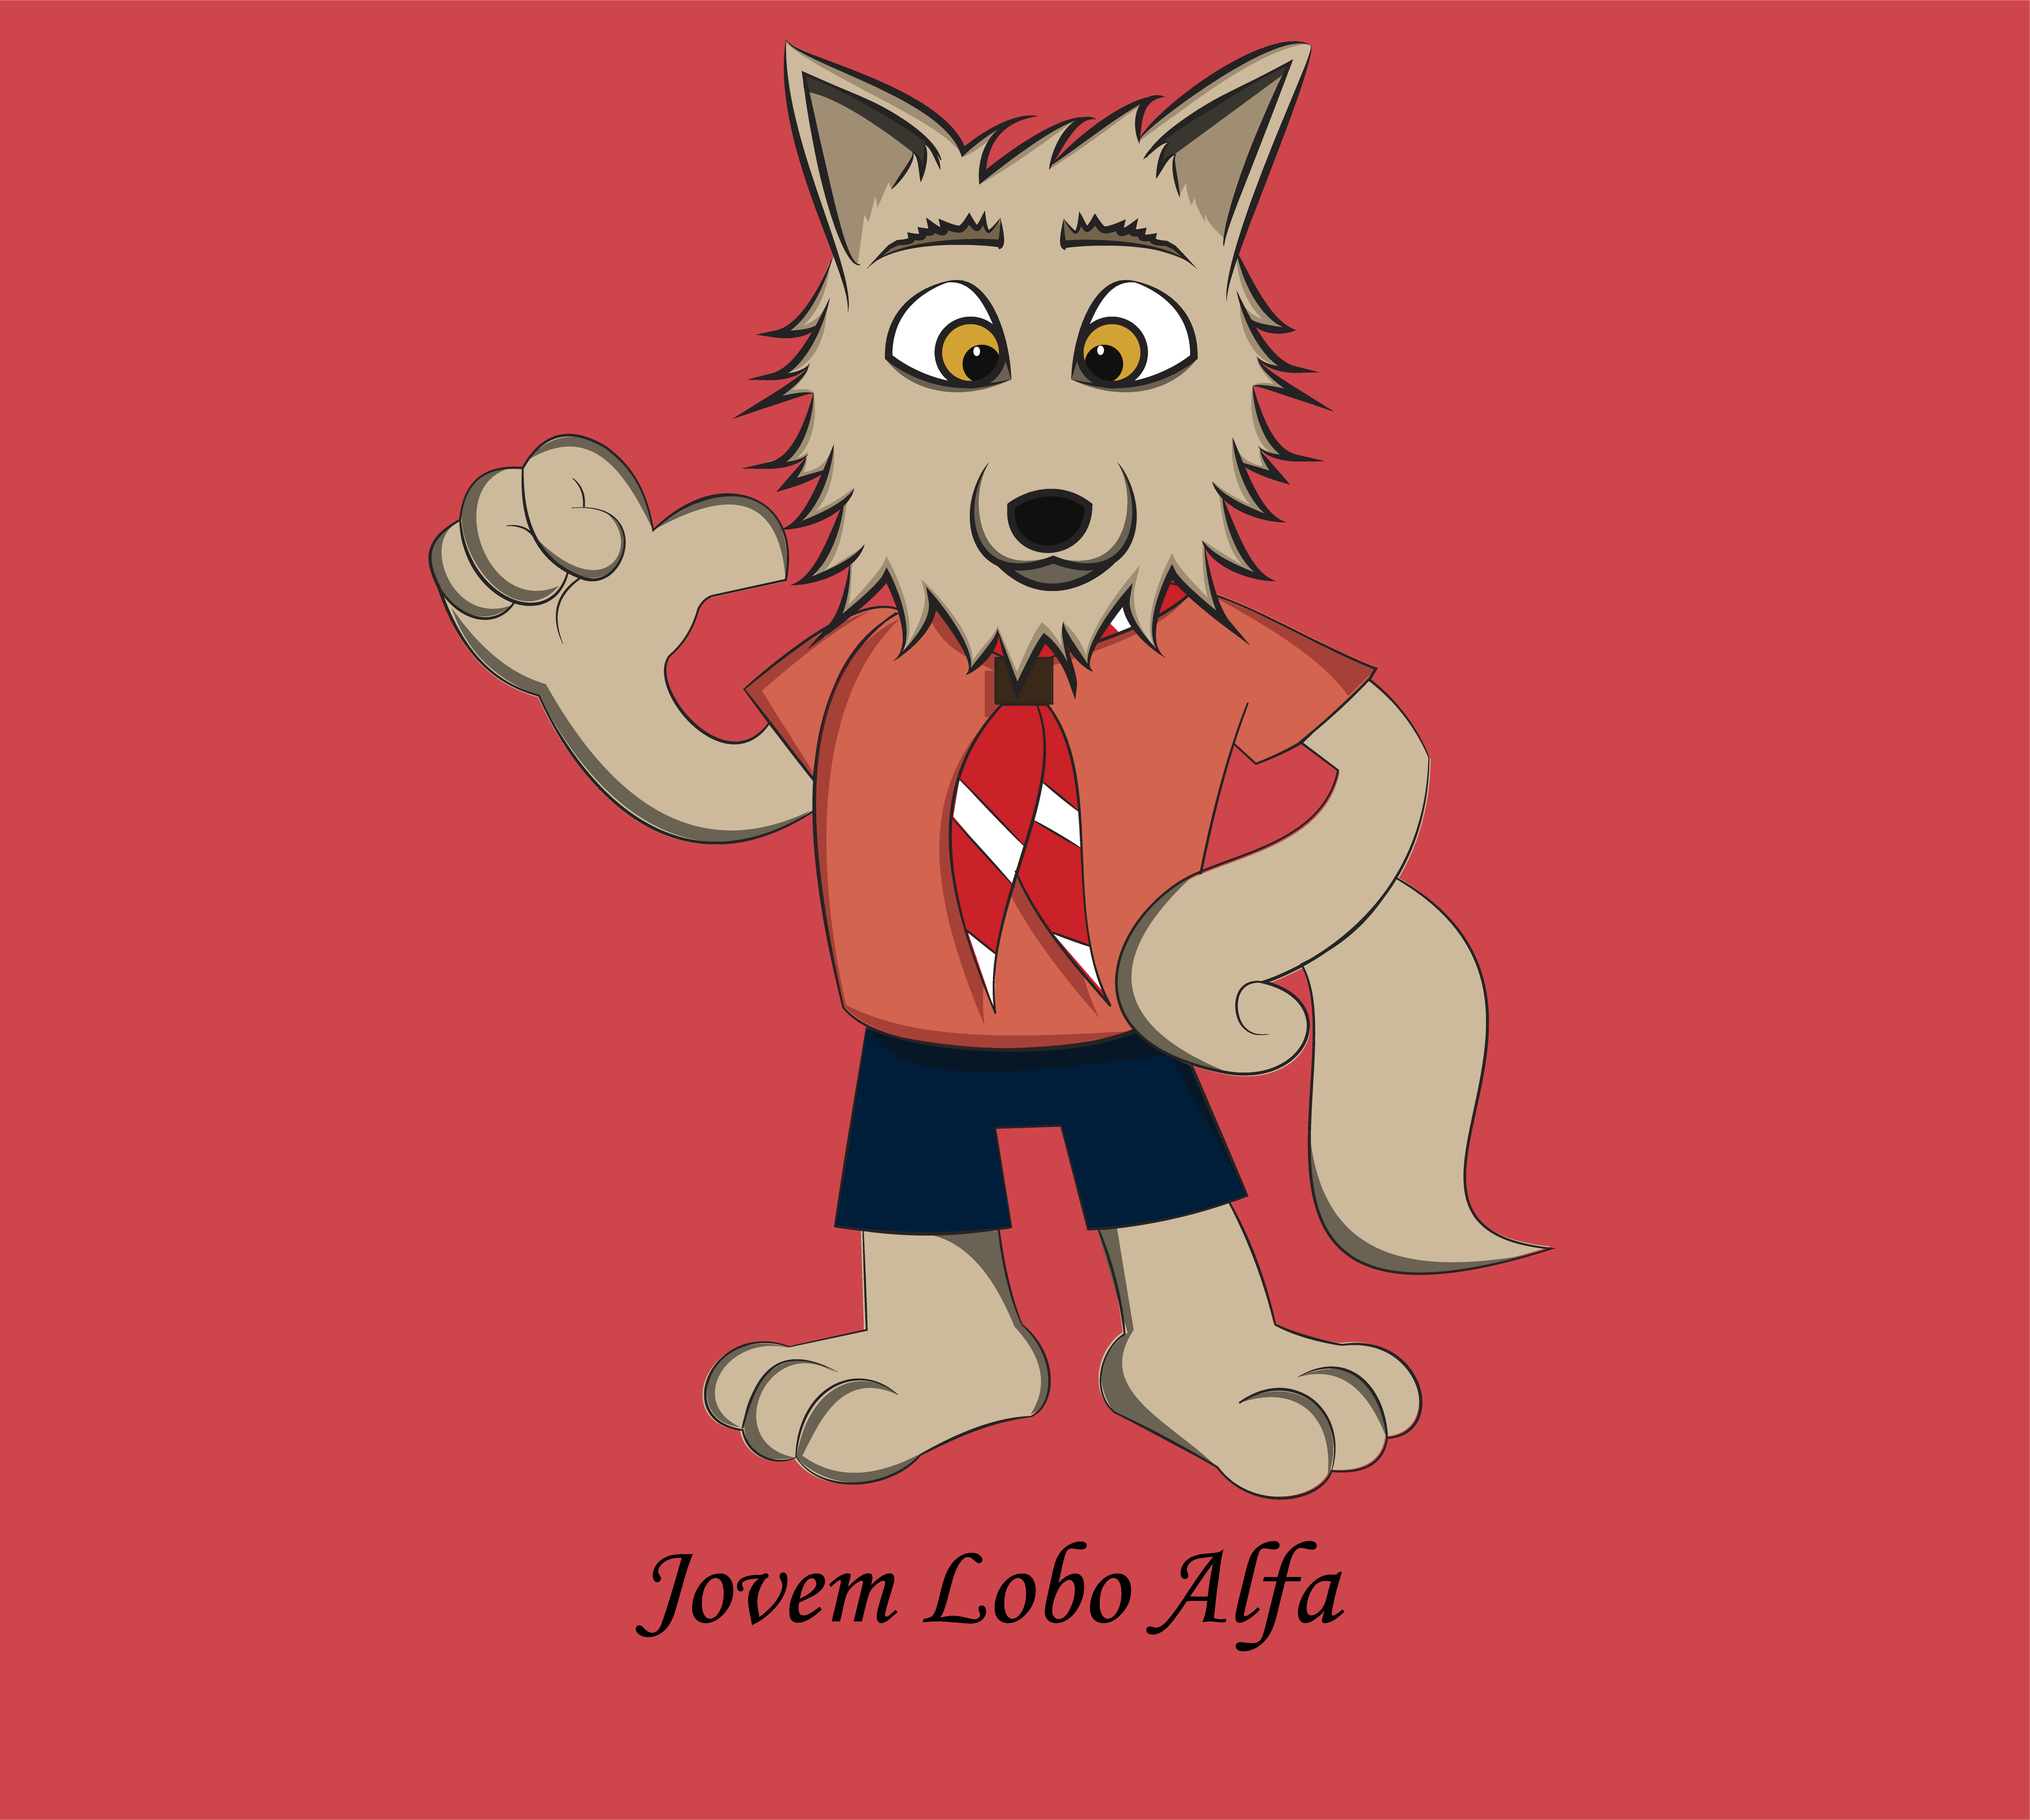 Jovem Lobo Alfa